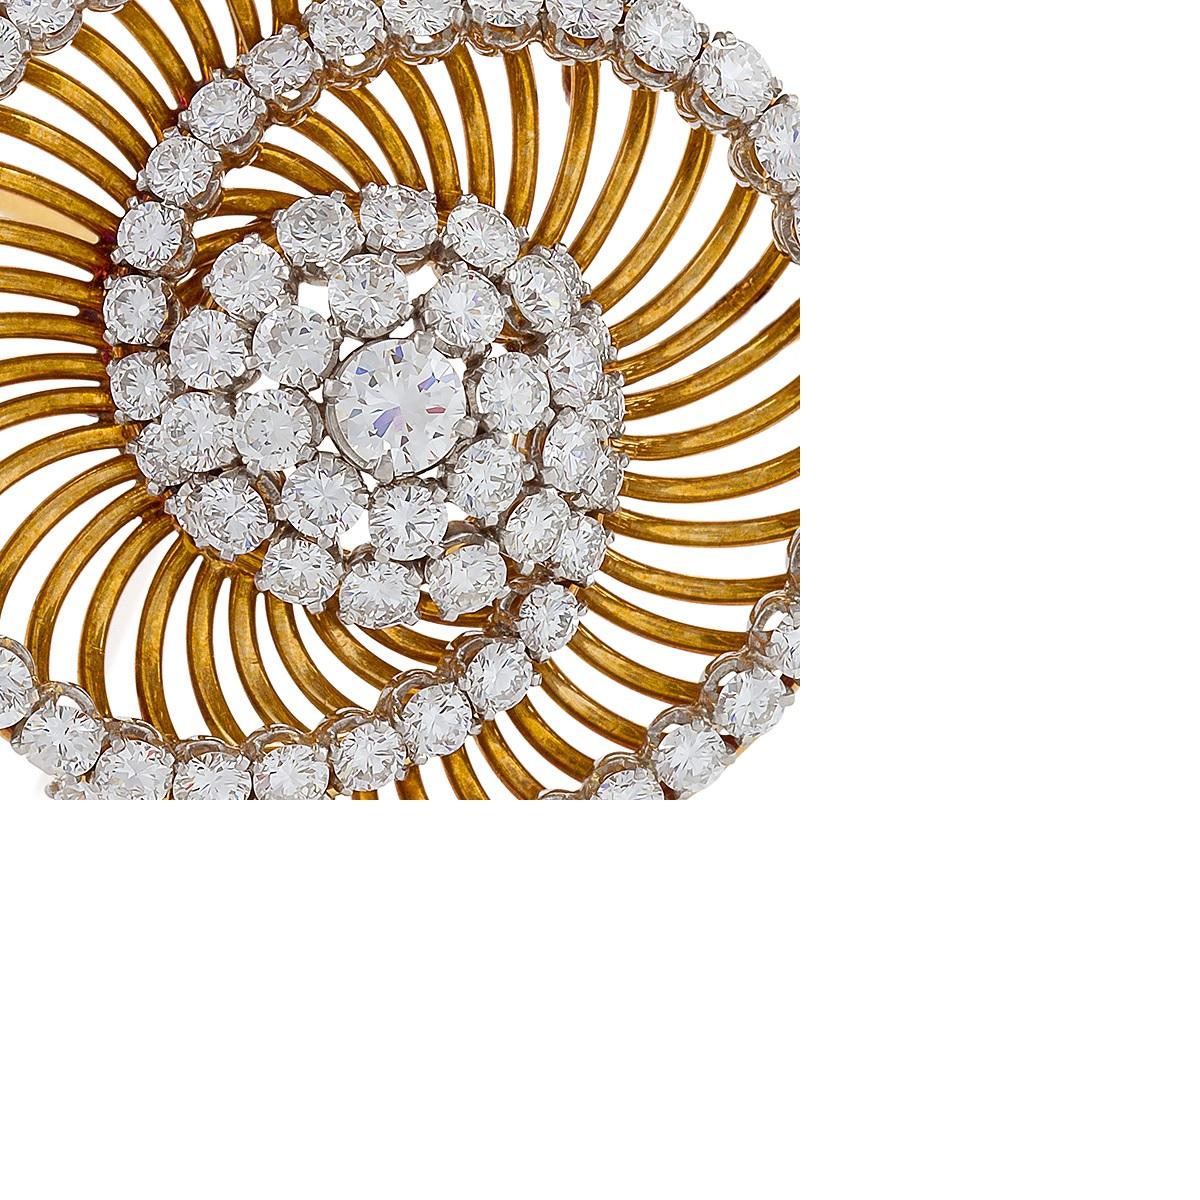 Cette intrigante broche de Bulgari est sertie de six carats et demi de diamants ronds de taille brillant, sertis en platine sur une monture en fil d'or jaune. La forme dynamique et tourbillonnante aux arcs entrecroisés est conçue comme une paire de